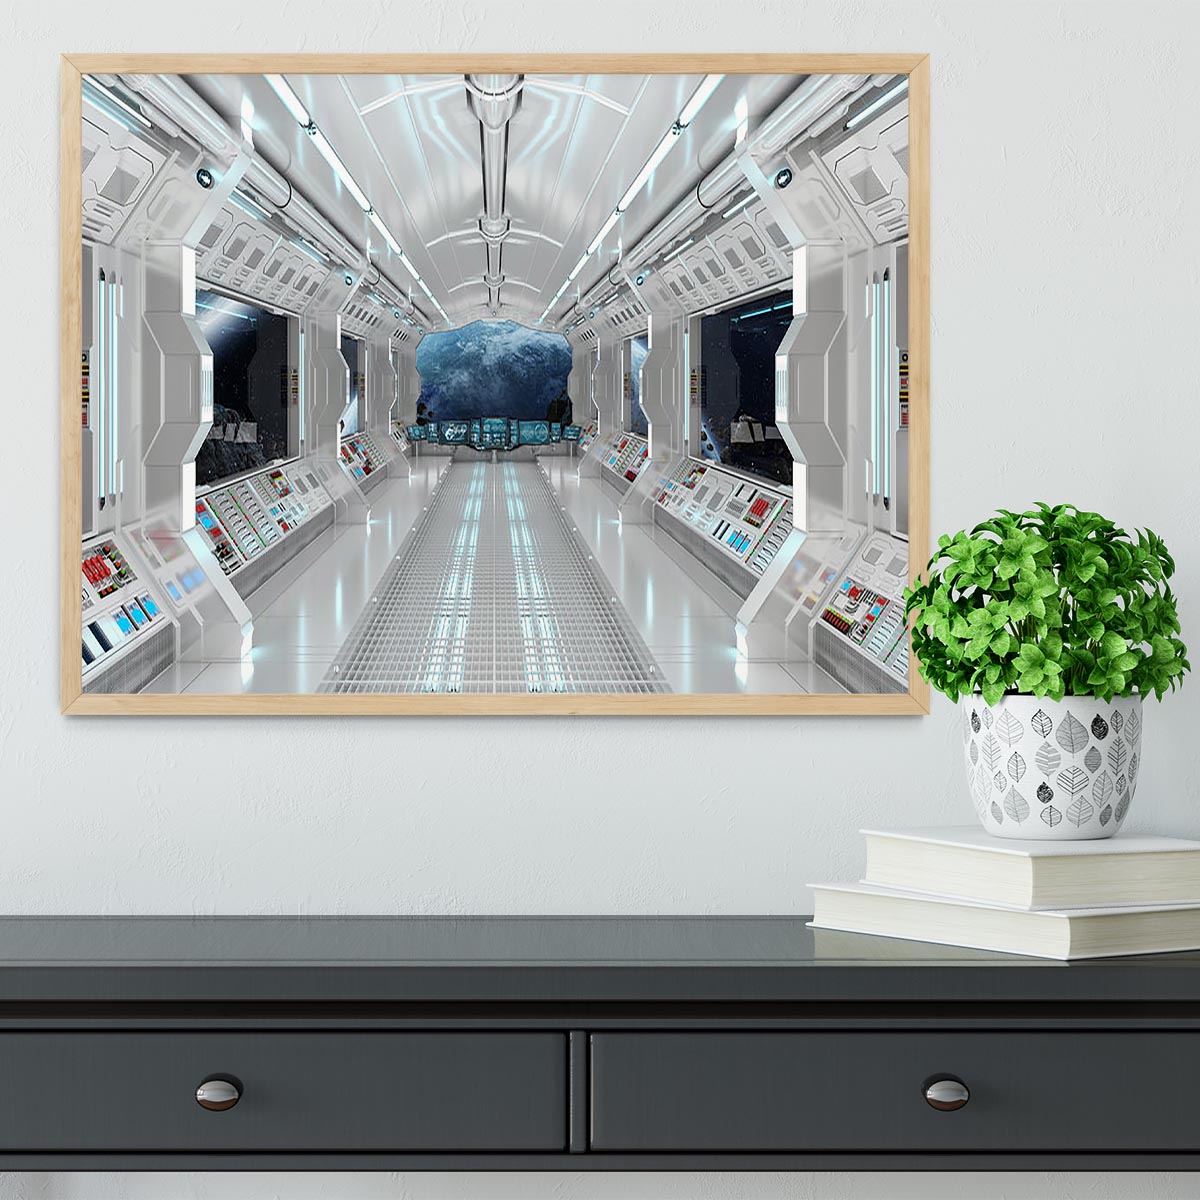 Inside Space Shuttle Framed Print - Canvas Art Rocks - 4